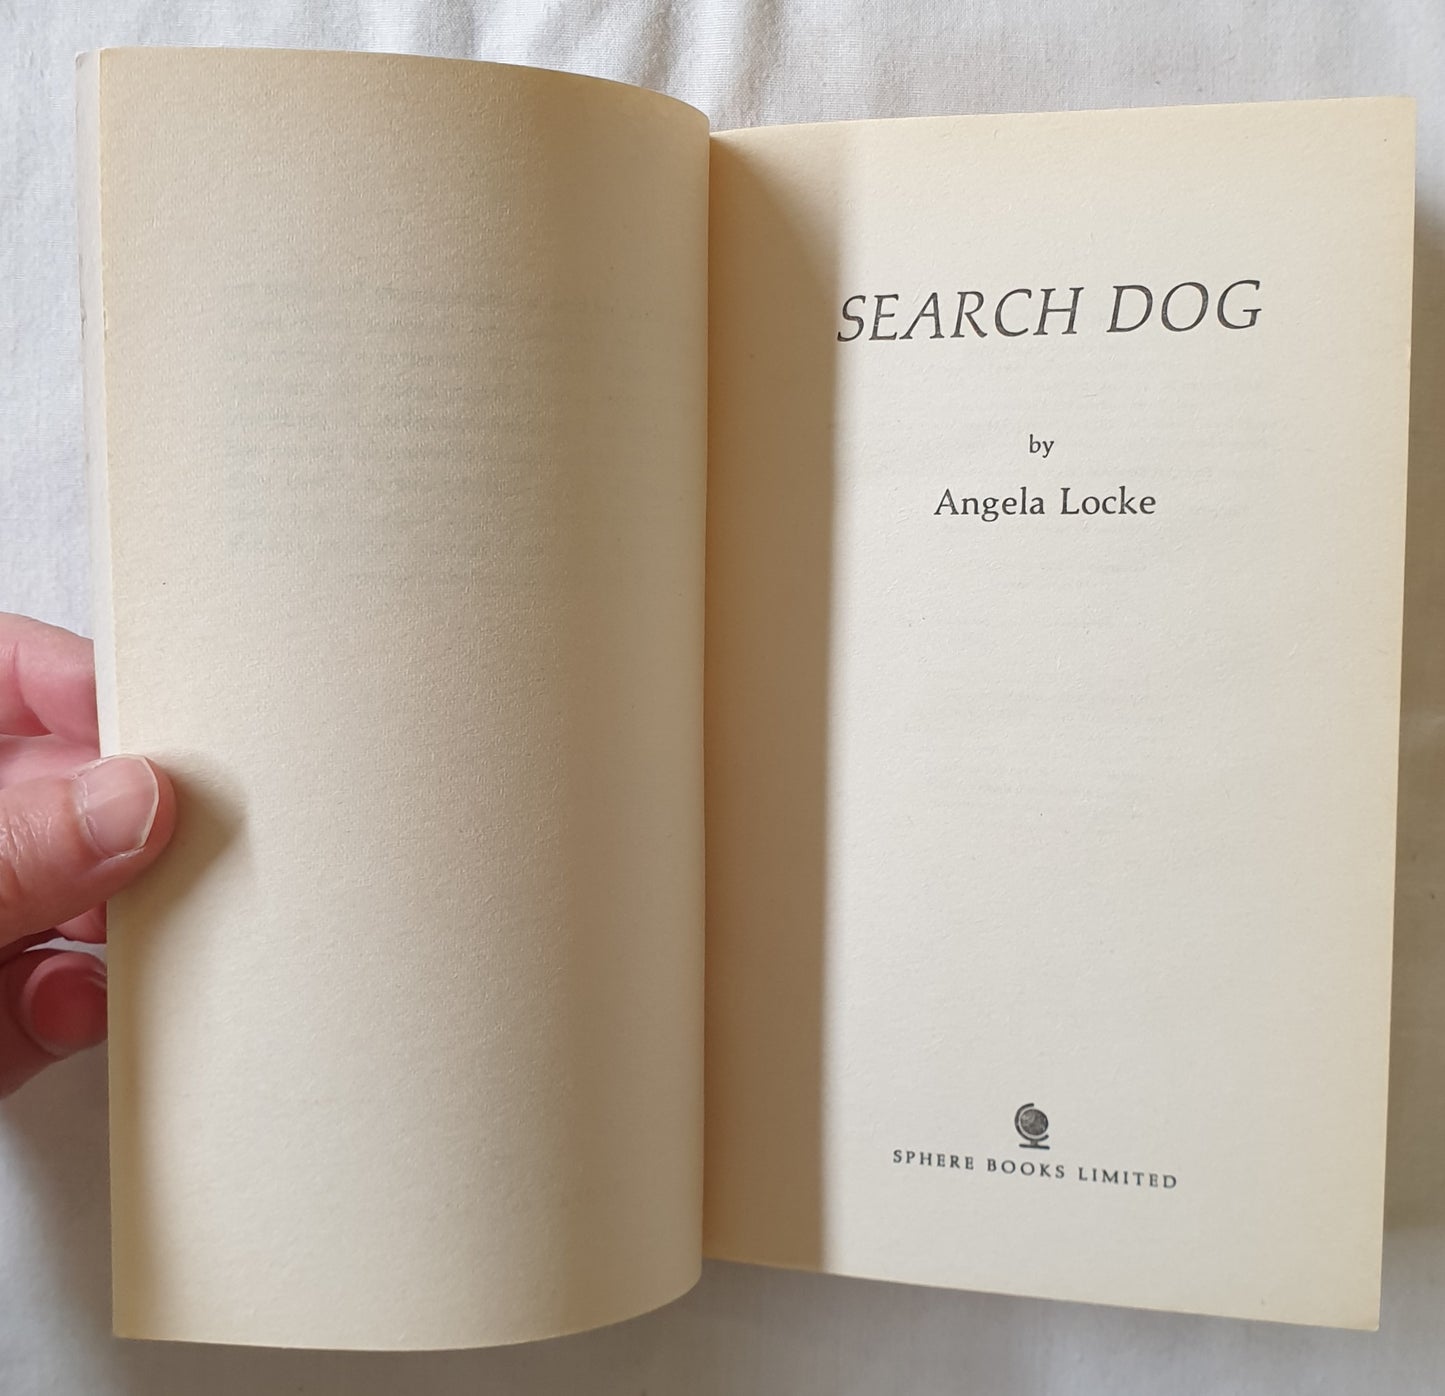 Search Dog by Angela Locke